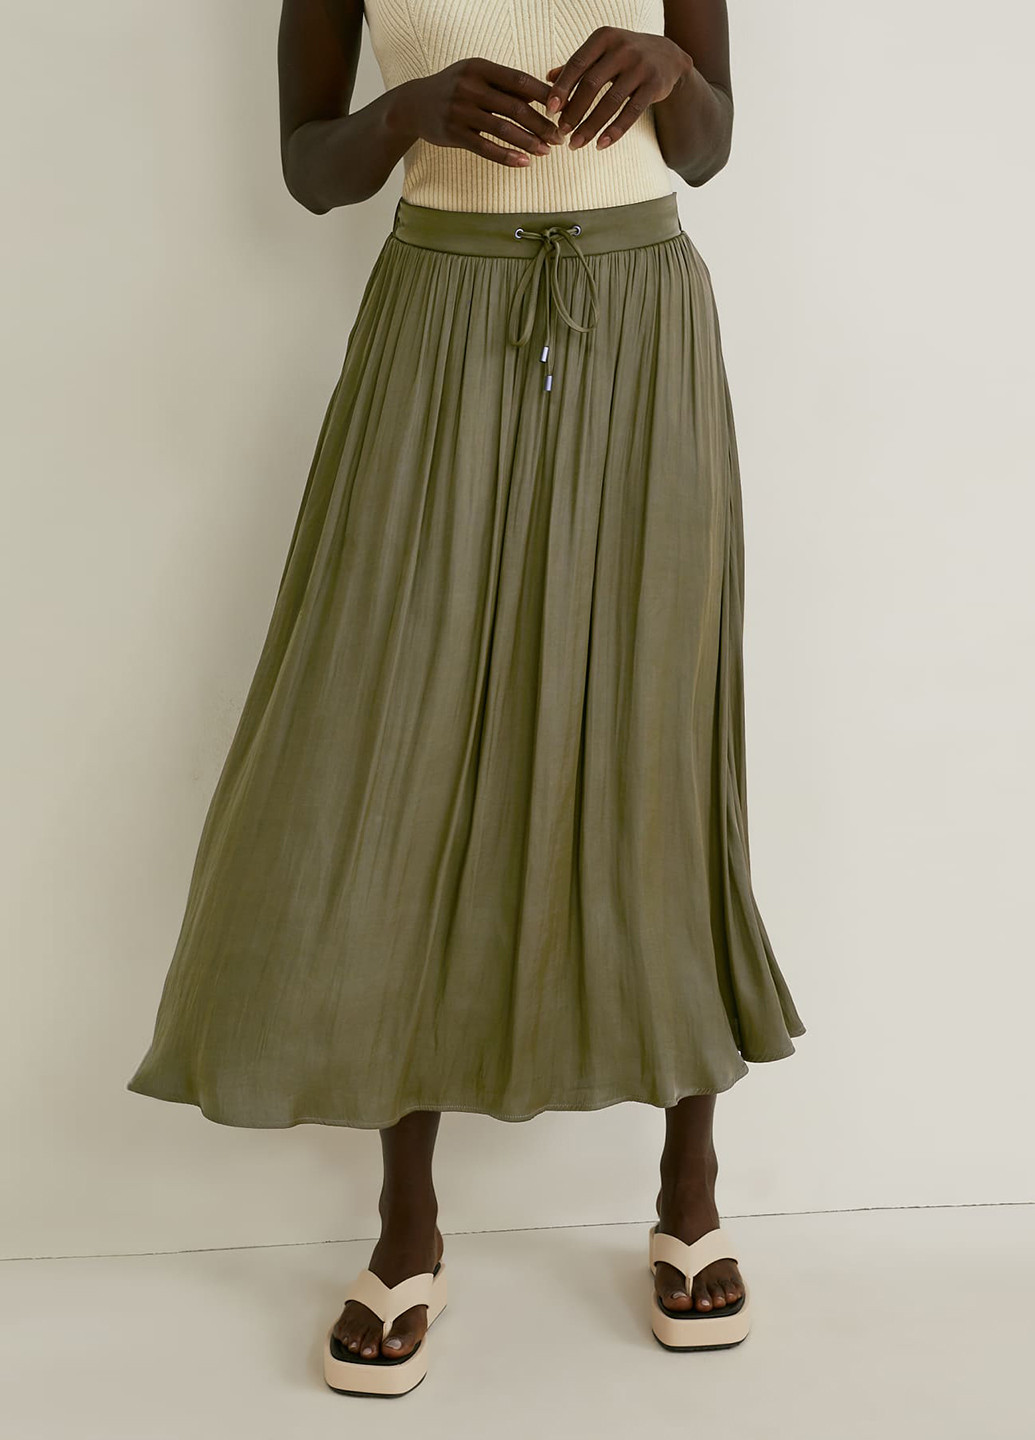 Оливковая (хаки) кэжуал однотонная юбка C&A клешированная